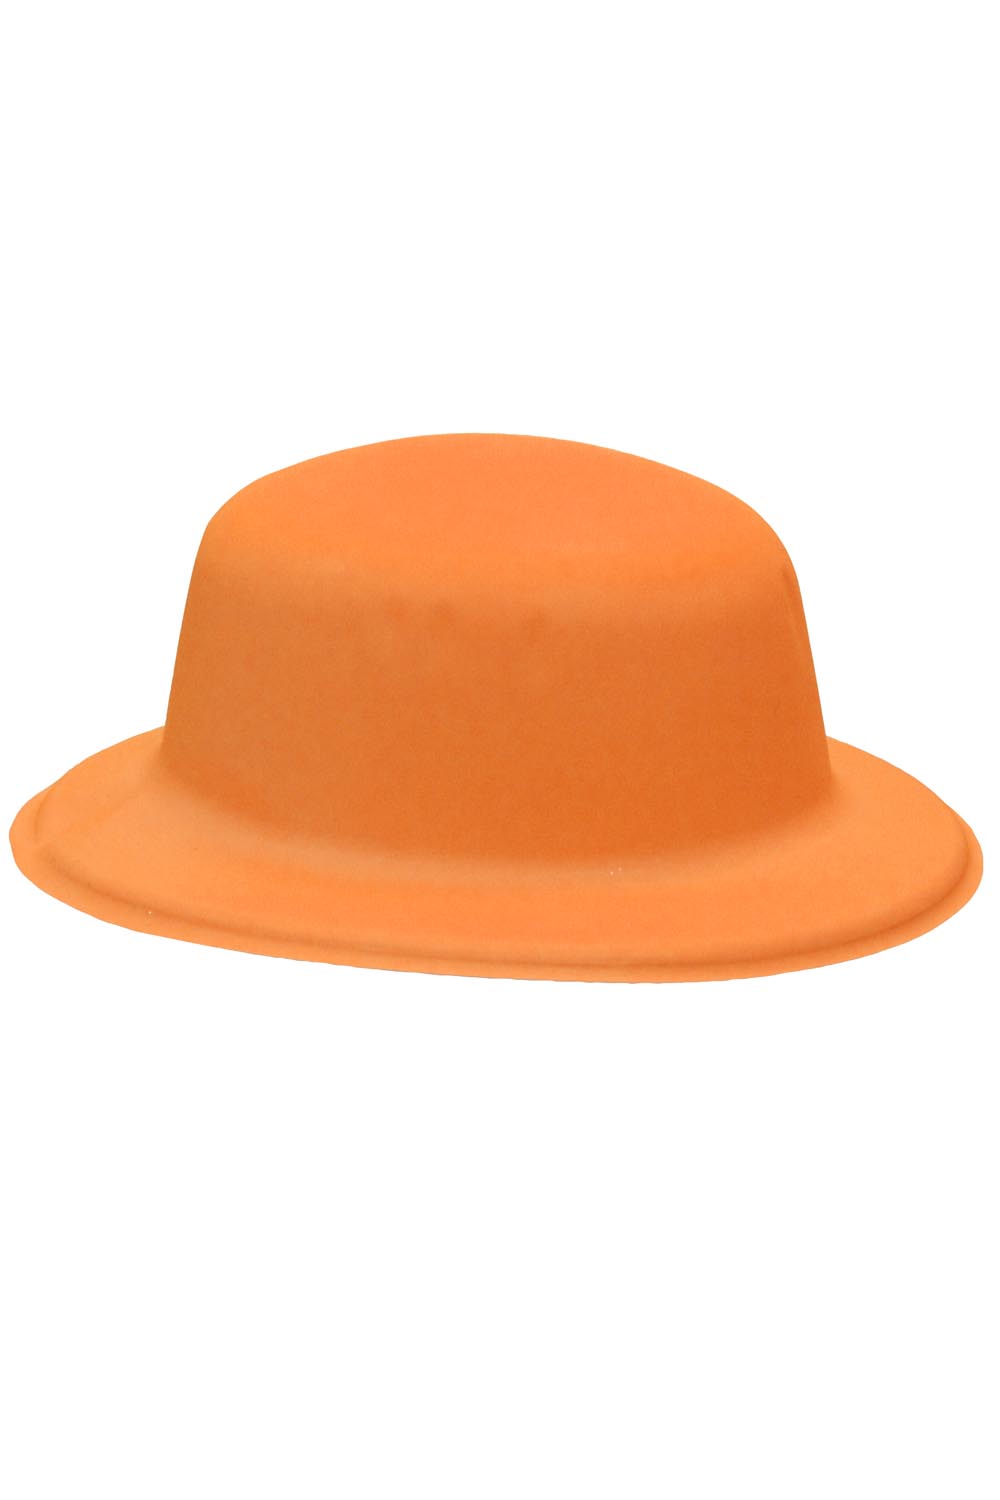 Cappello bombetta arancio